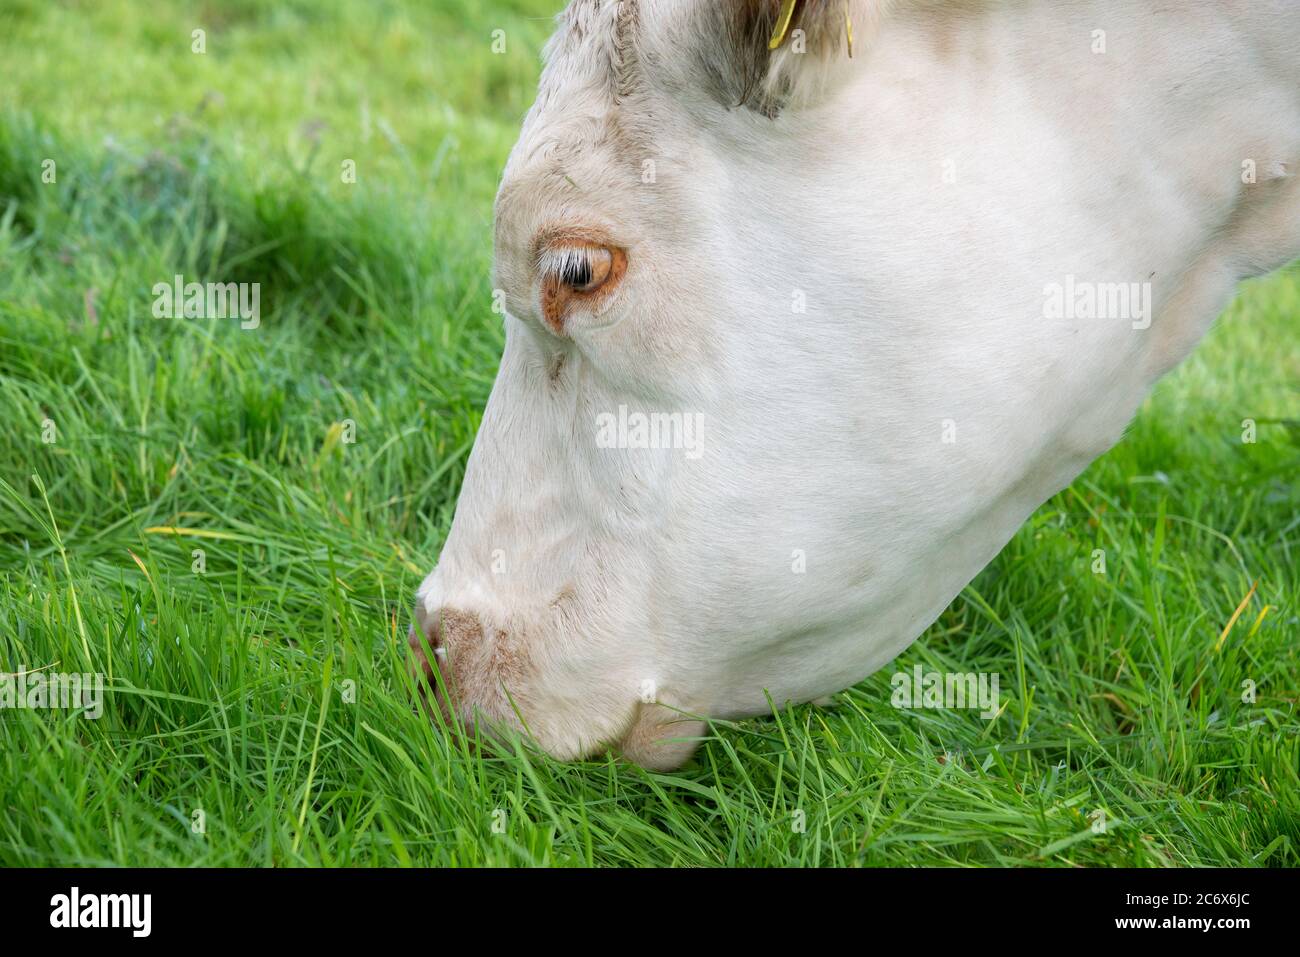 Gros plan sur la vache Charolais paître sur une herbe d'été verte luxuriante Banque D'Images